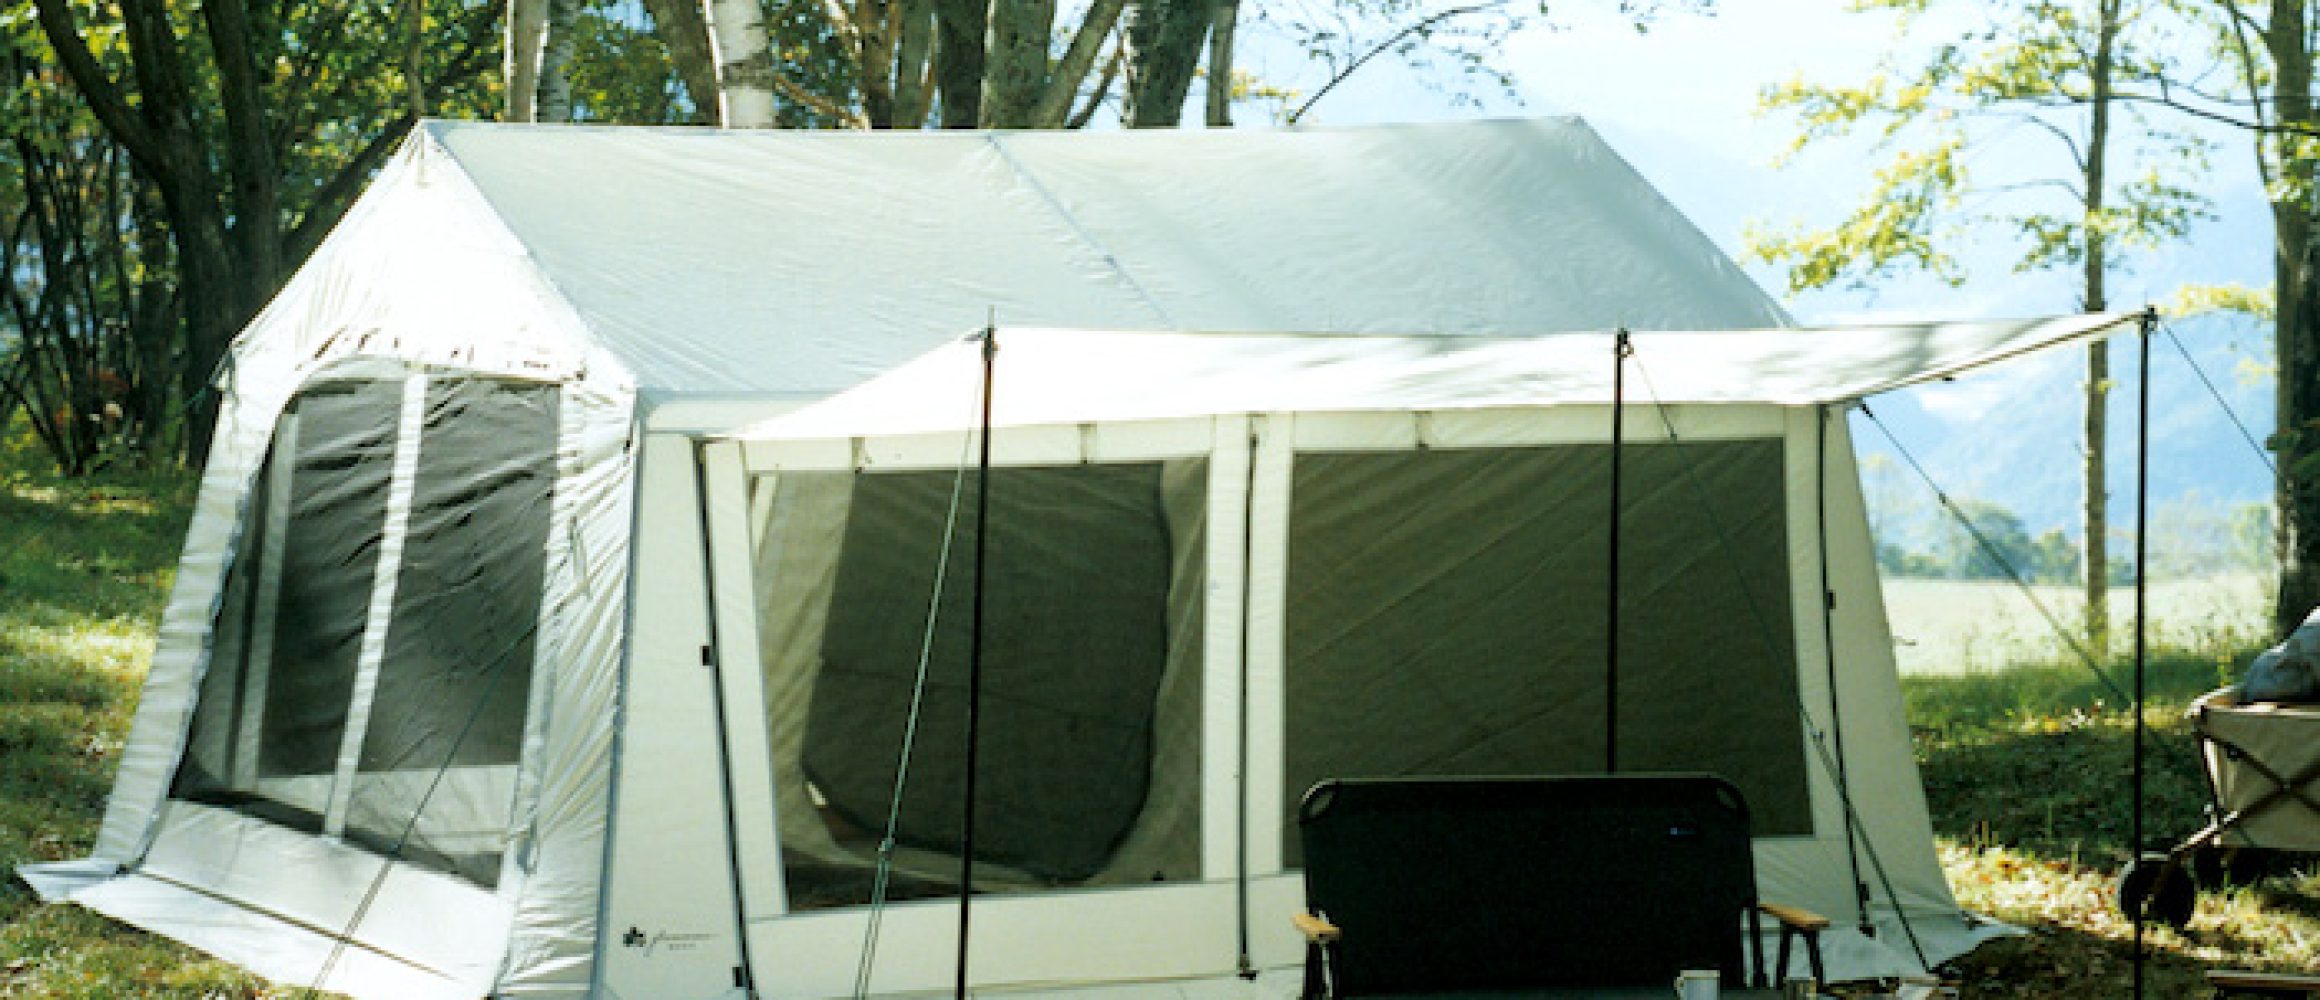 ロゴス往年の名作テントが復刻。90年代風の佇まいがソソる 